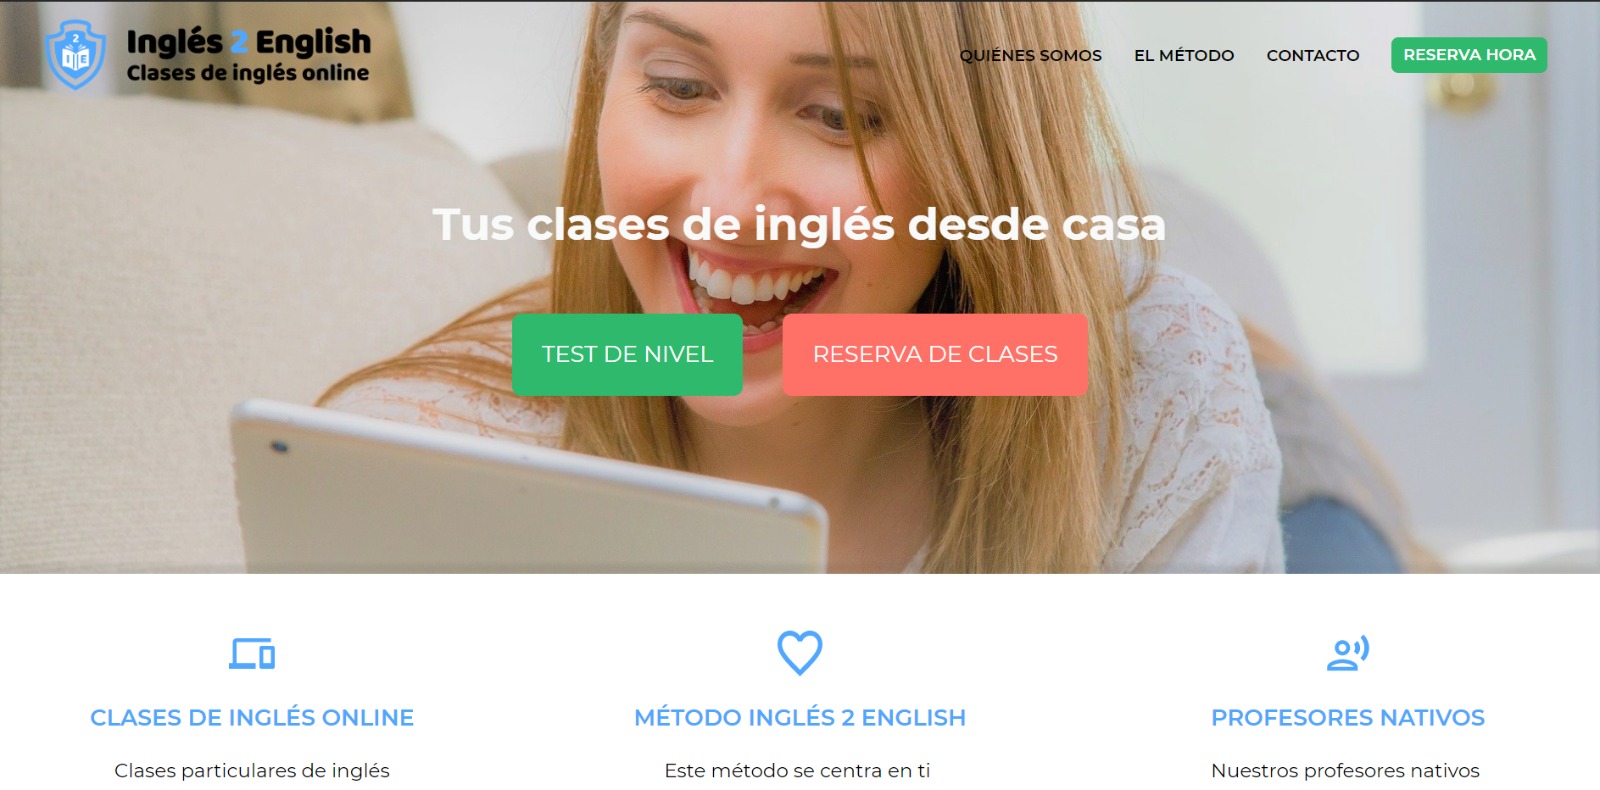 Inglés 2 English - Clases de inglés online